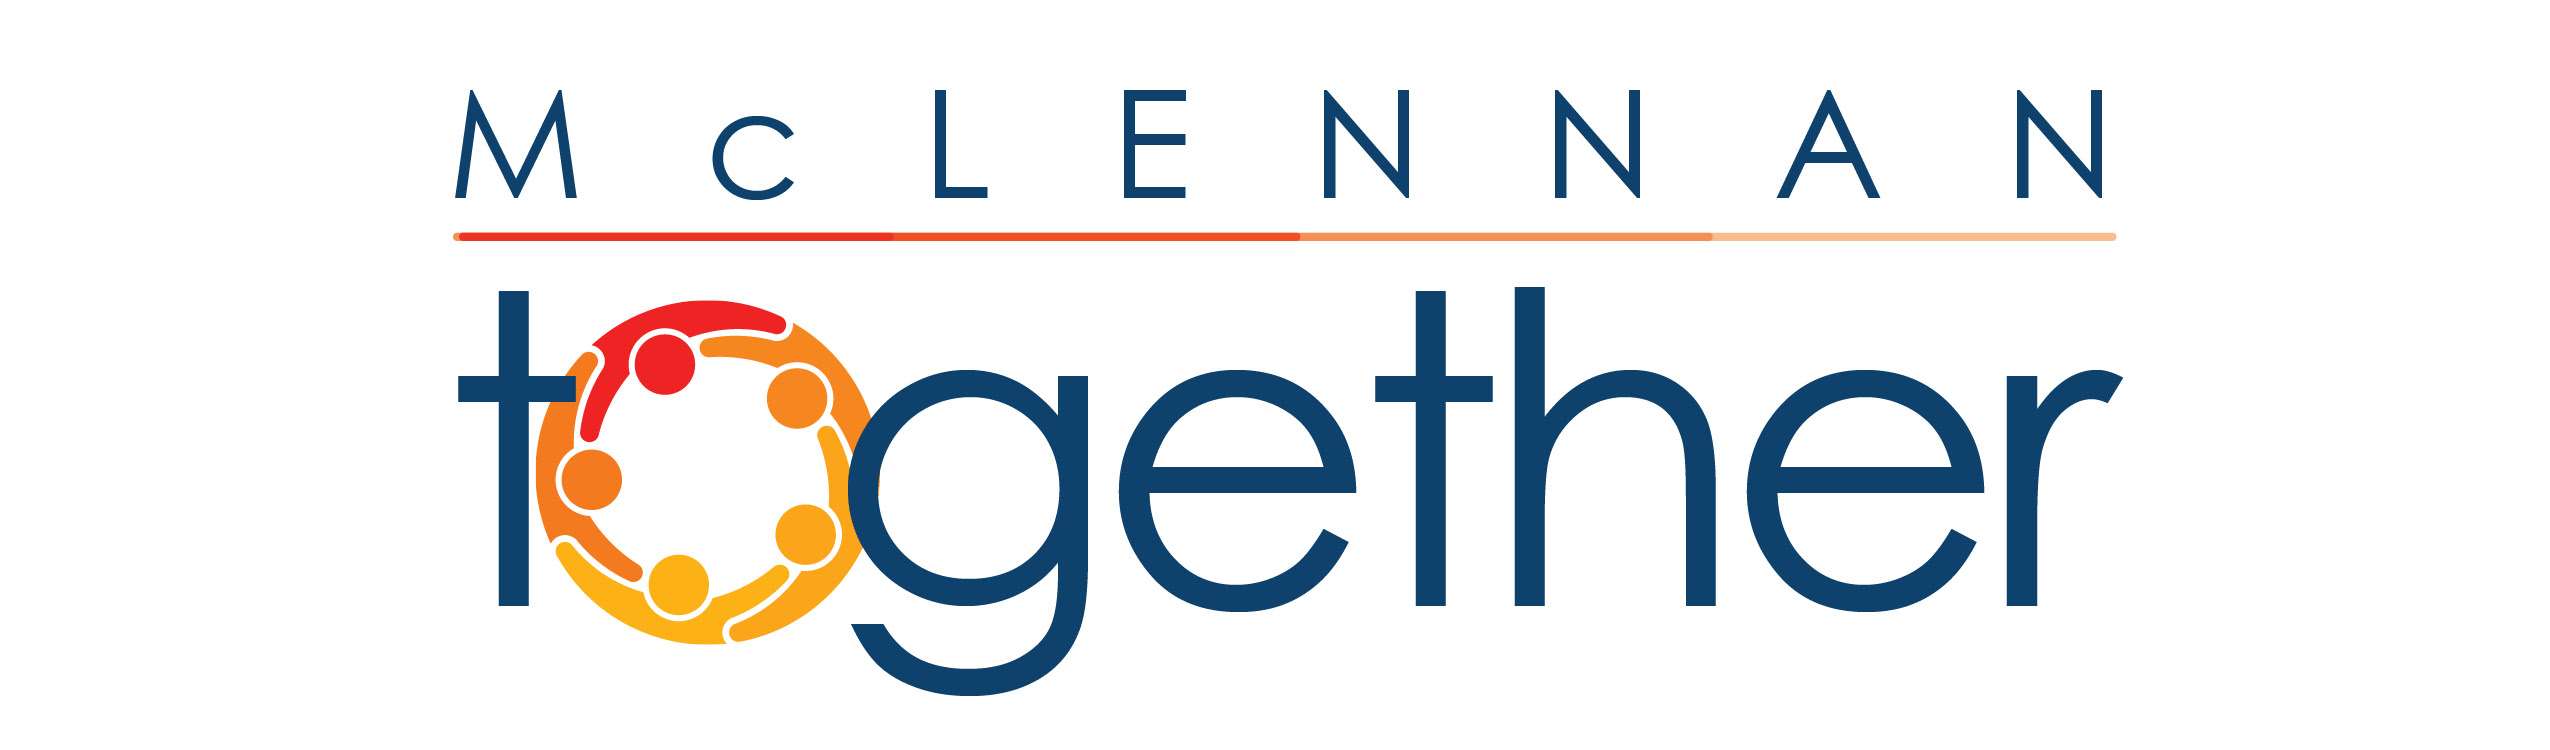 McLennan Together logo